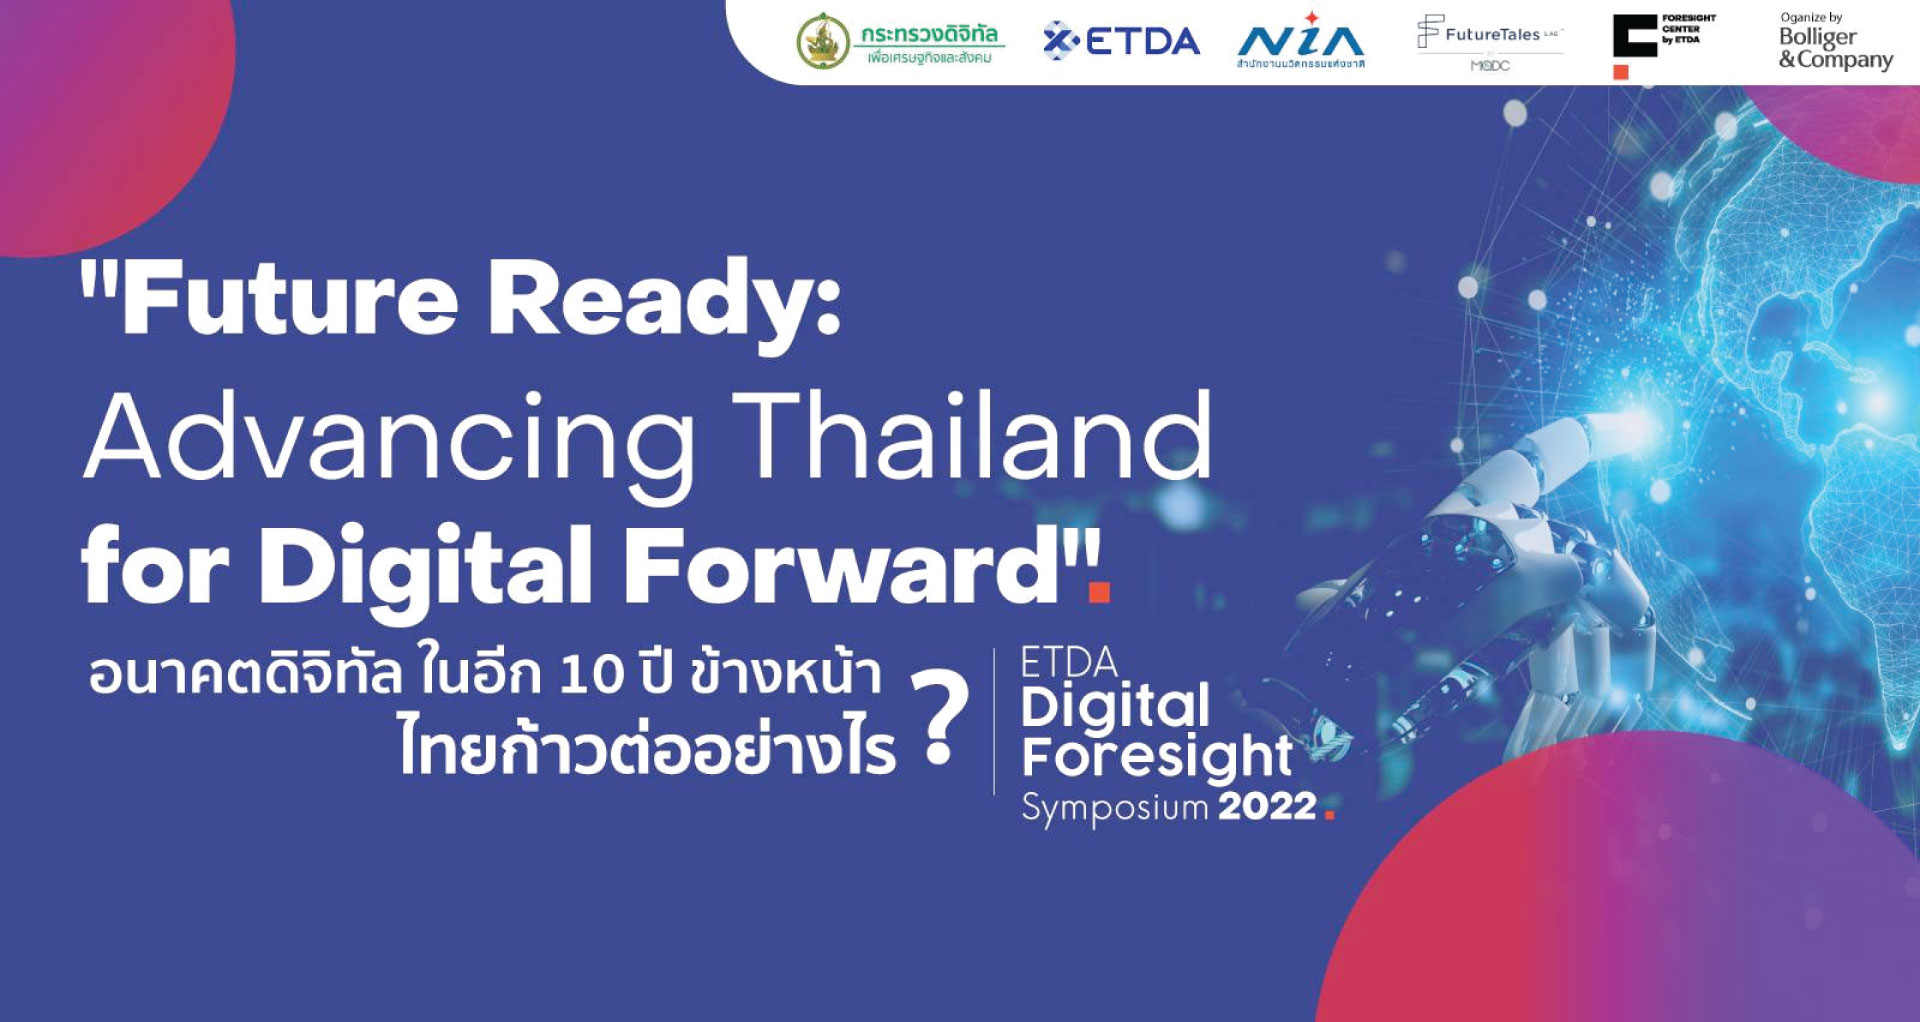 ETDA Digital Foresight Symposium 2022 ในหัวข้อ “Future Ready: Advancing Thailand for Digital Forward